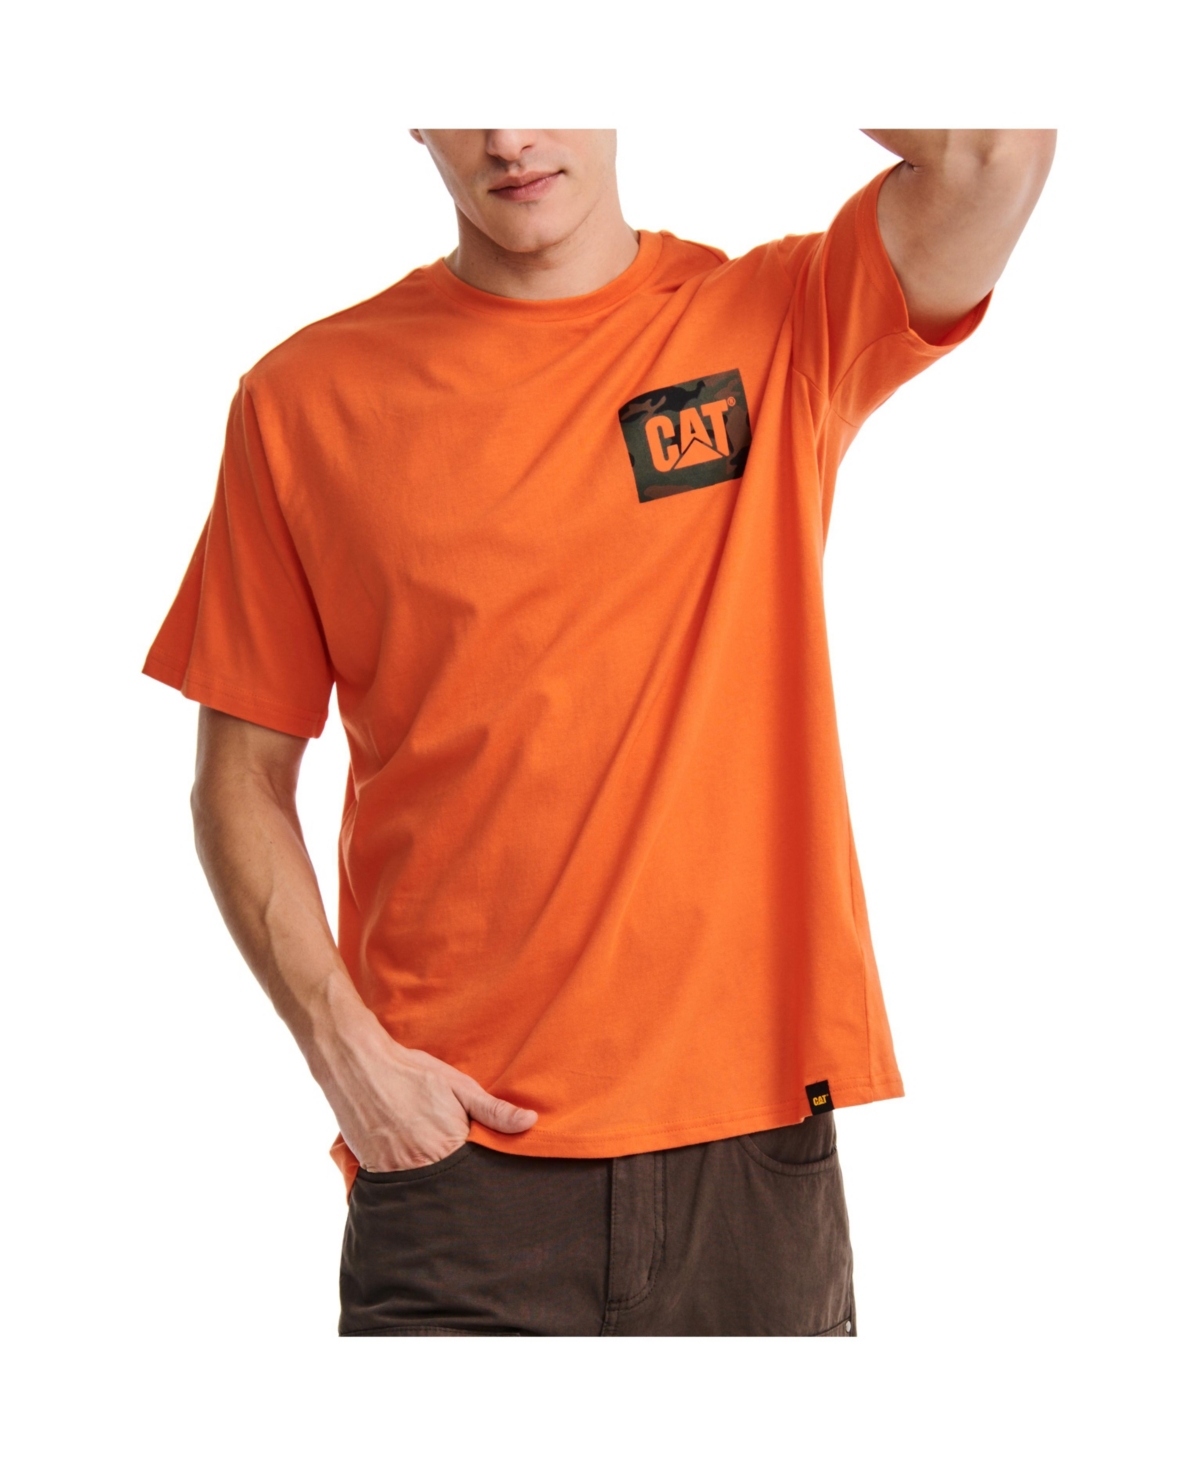 Men's Urban Camo Graphic T-shirt - Firecracker